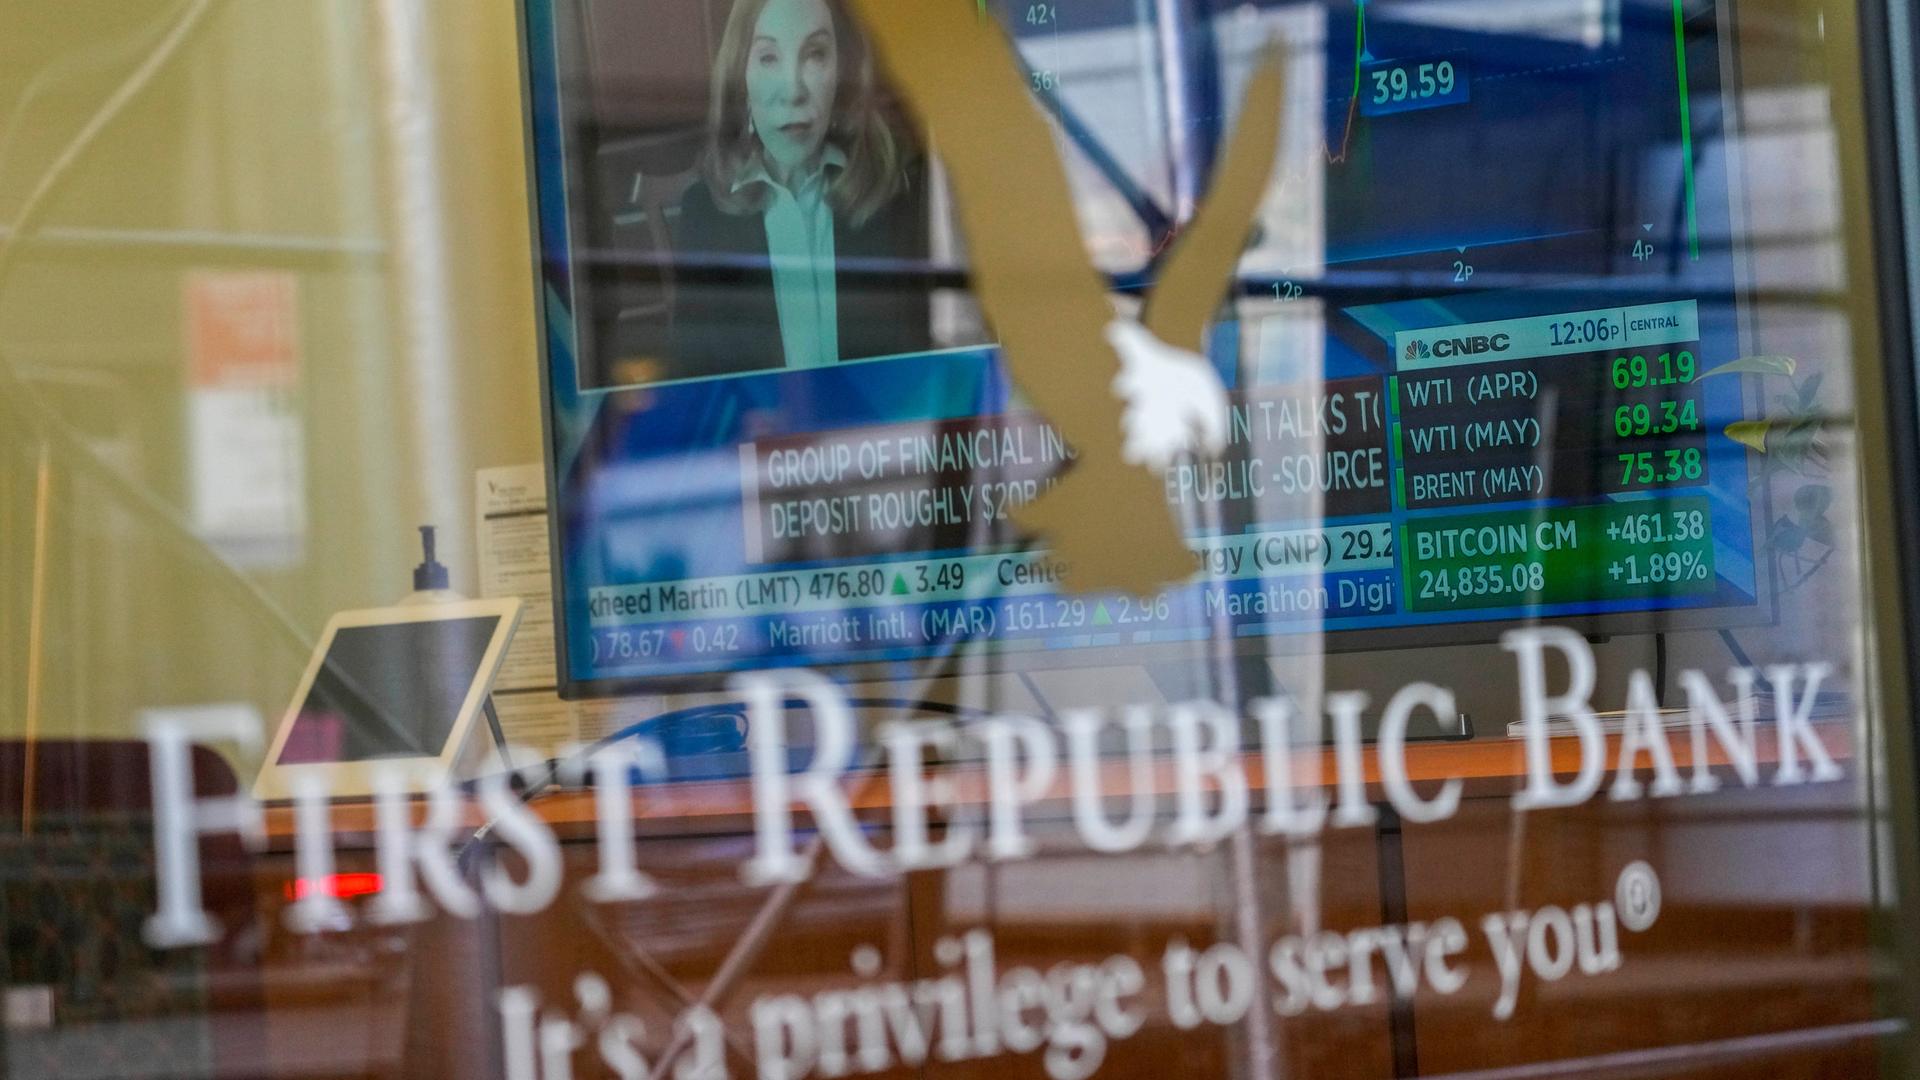 Blick auf die Scheibe, die eine Häuserwand spiegelt. Dahinter sieht man einen Bildschirm mit Finanzdaten einer Nachrichtensendung. Auf der Scheibe steht "First Republic bank - It´s a privilege to serve you"